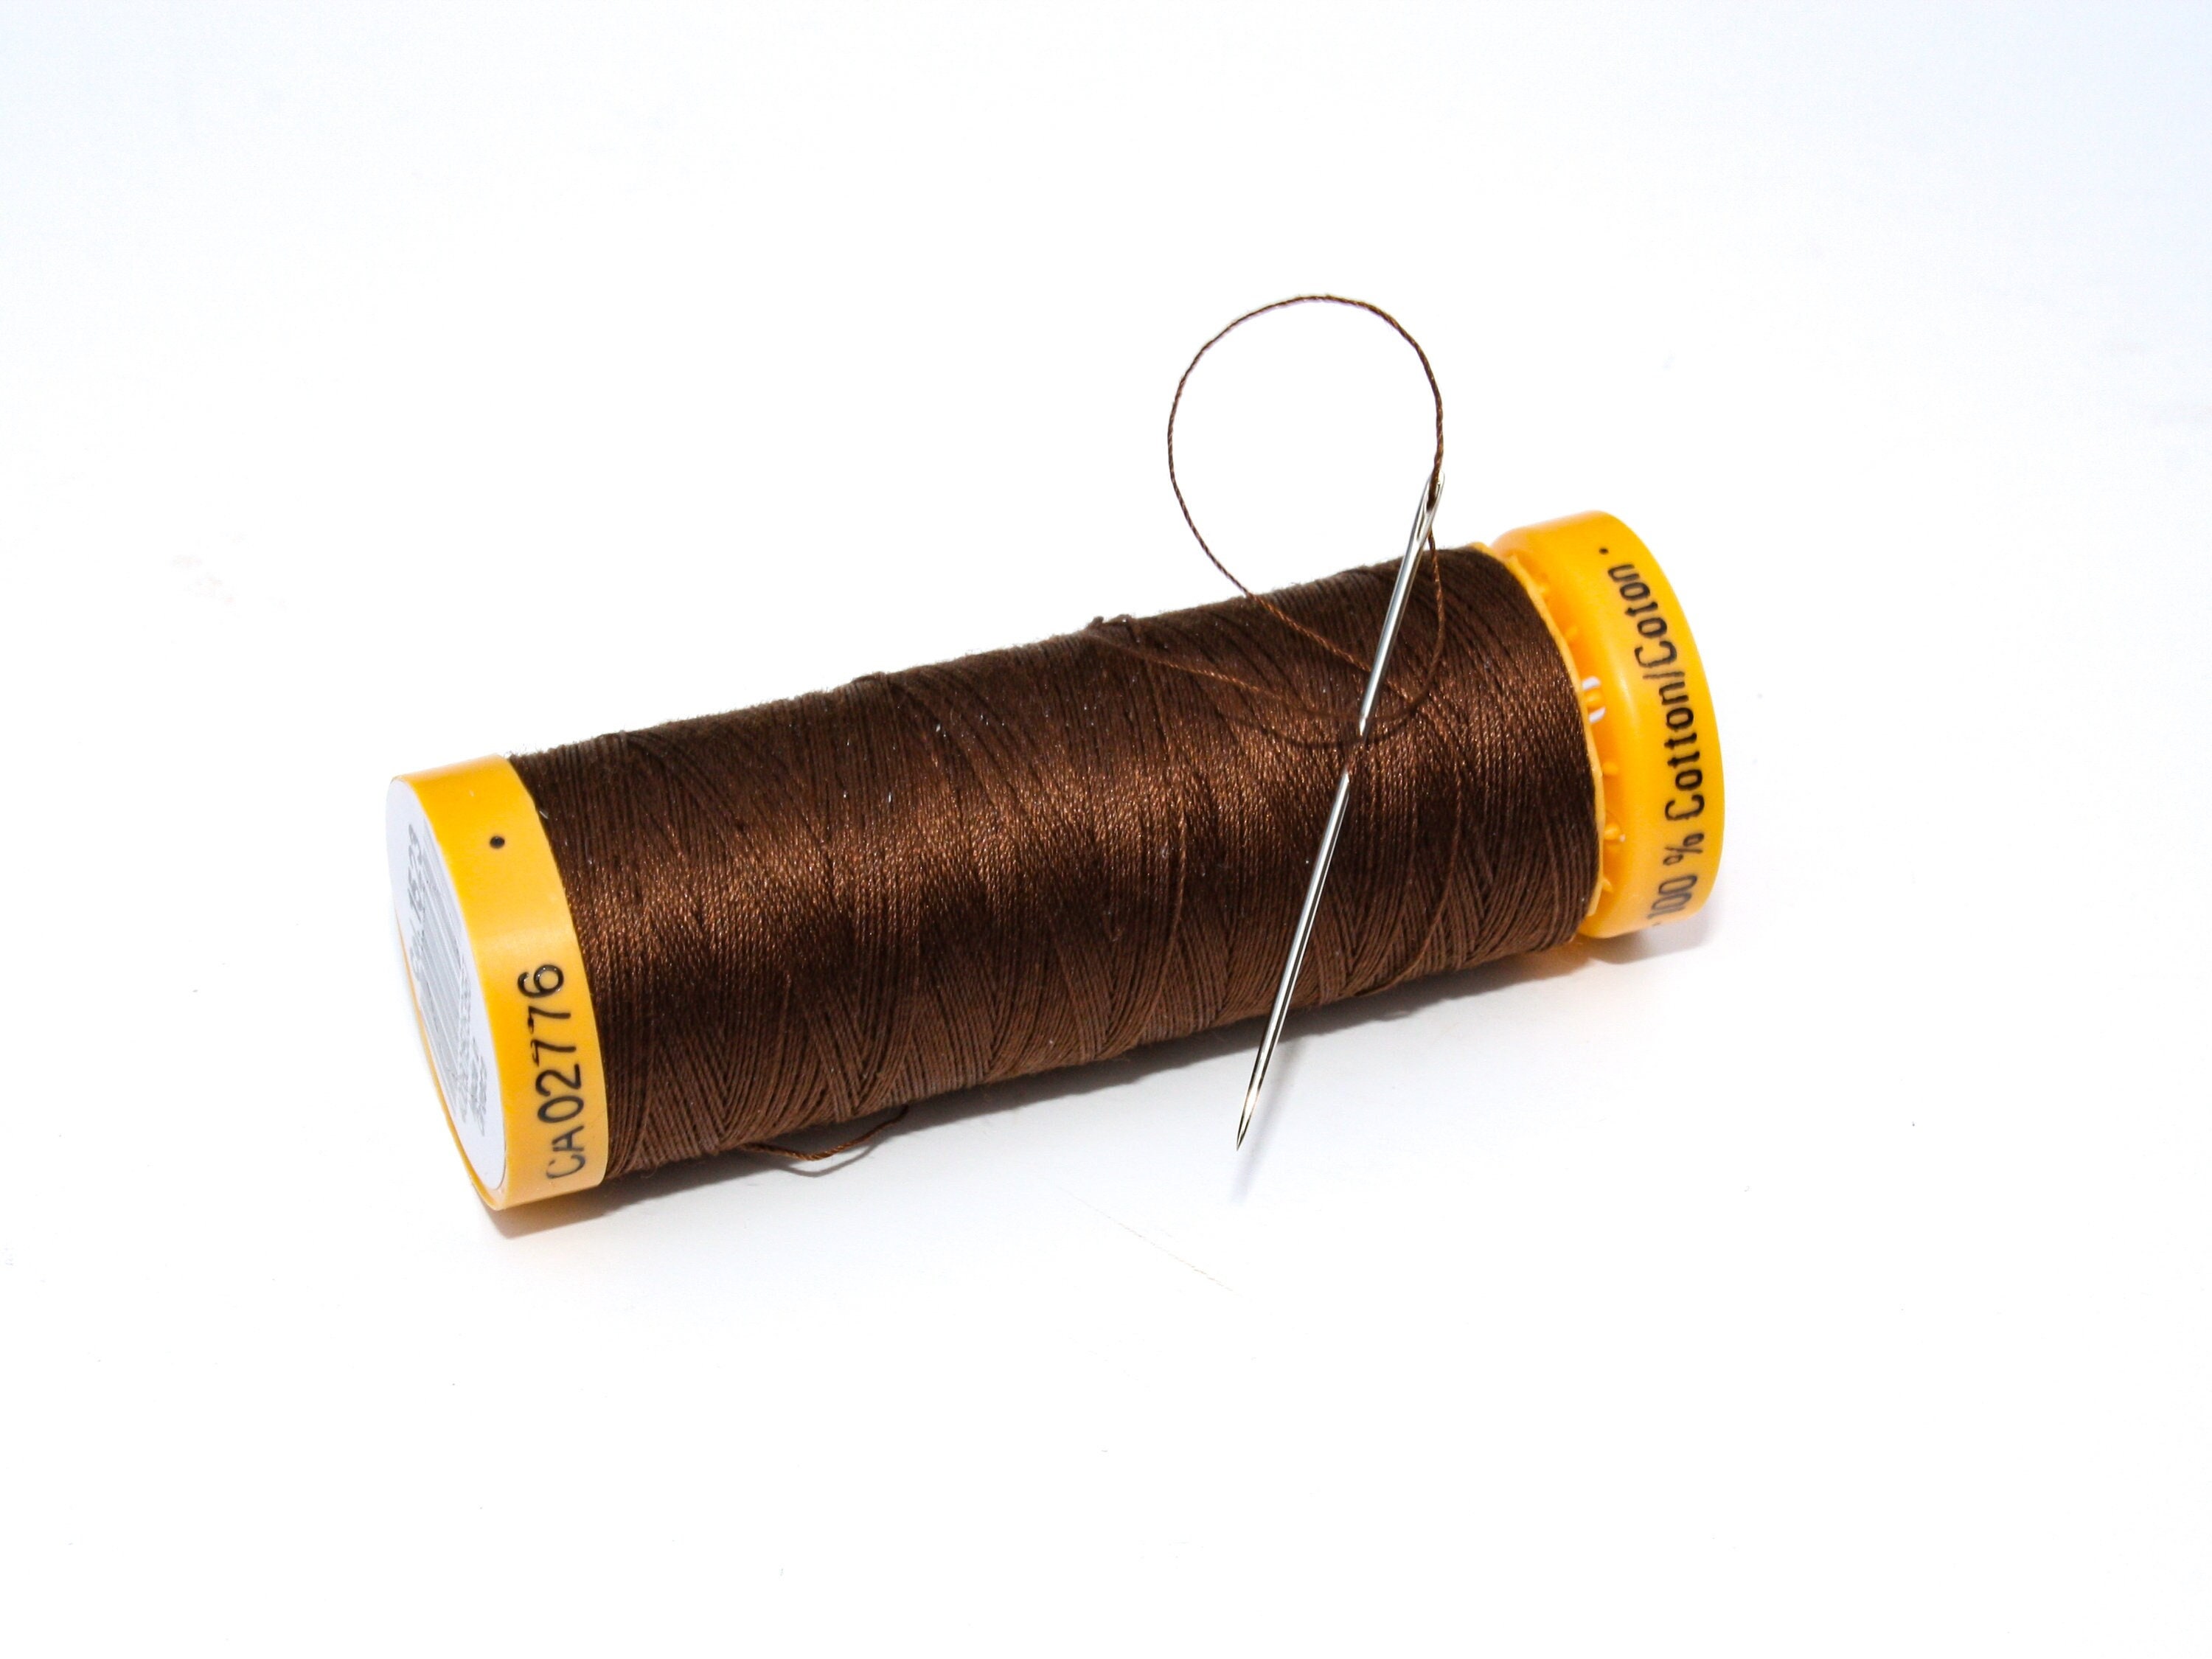 Gutermann Red Cotton Thread, 100m Reel, 2453, Hand Sewing Threads, 100%  Cotton for Machine or Overlocker 